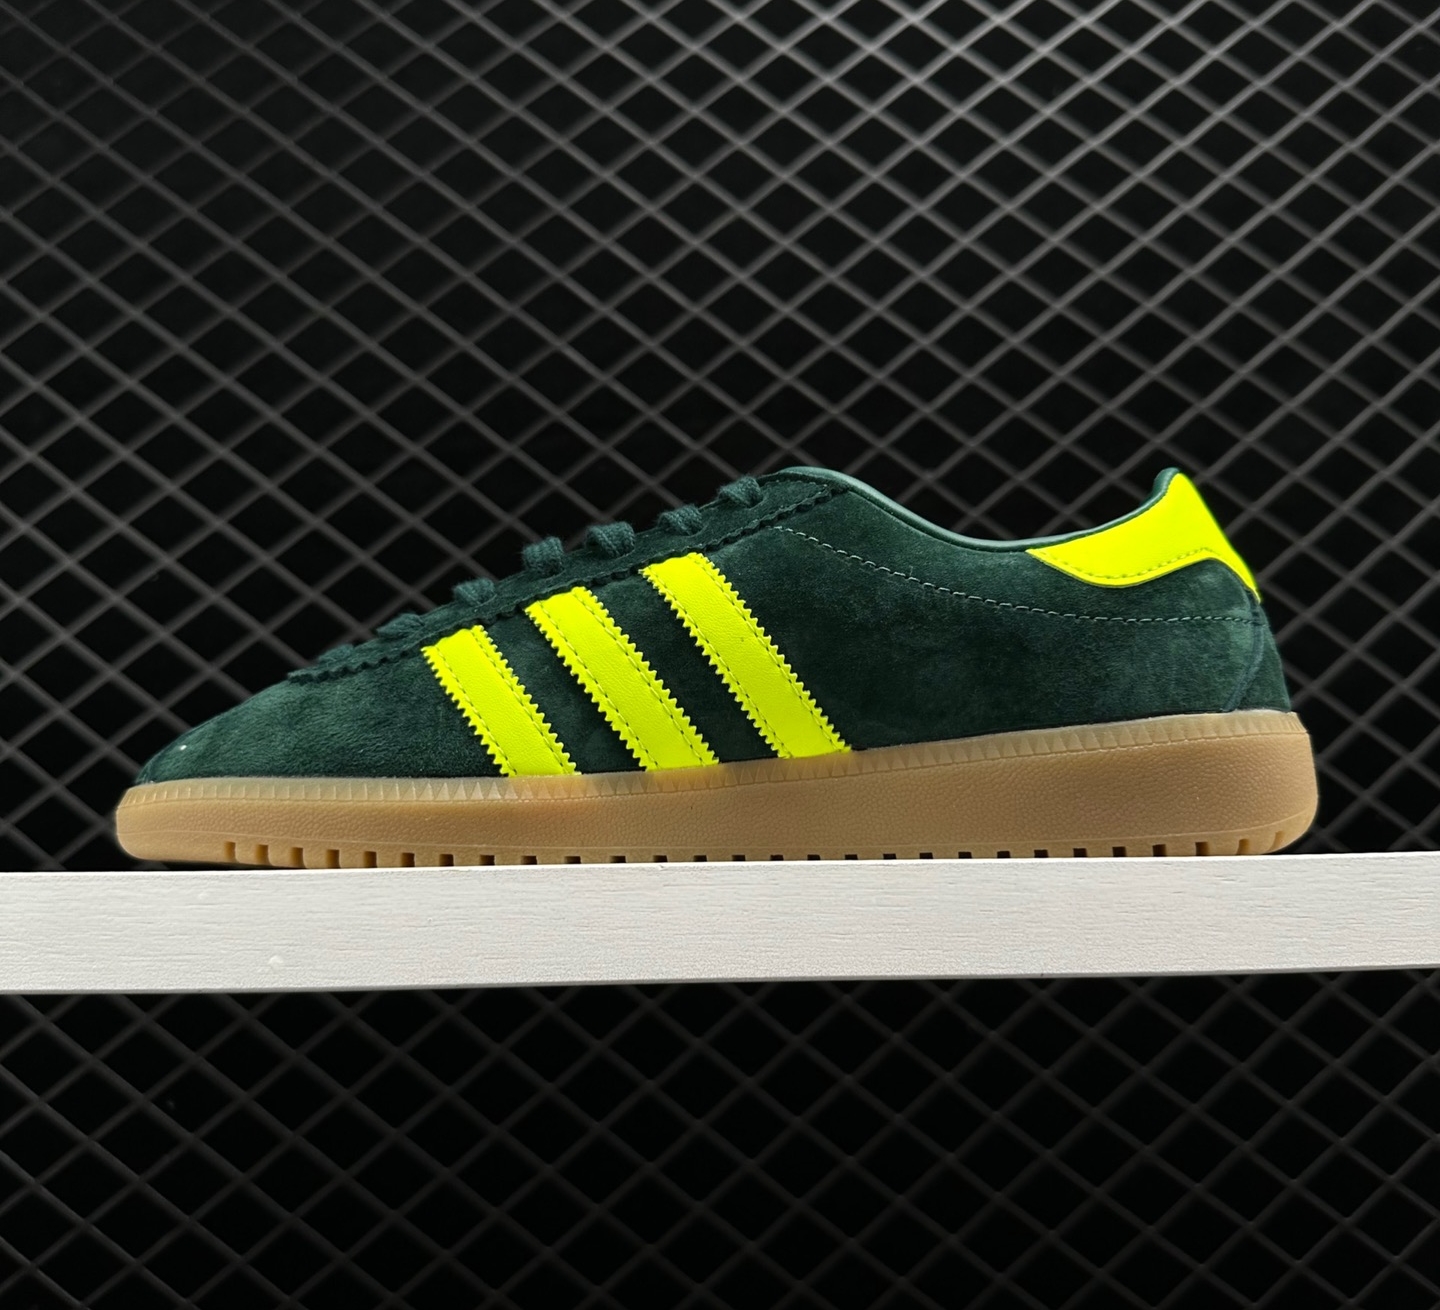 Adidas Originals Bermuda Collegiate Green Shock Yellow Gum B41472 - Trendy Athletic Sneakers for Men